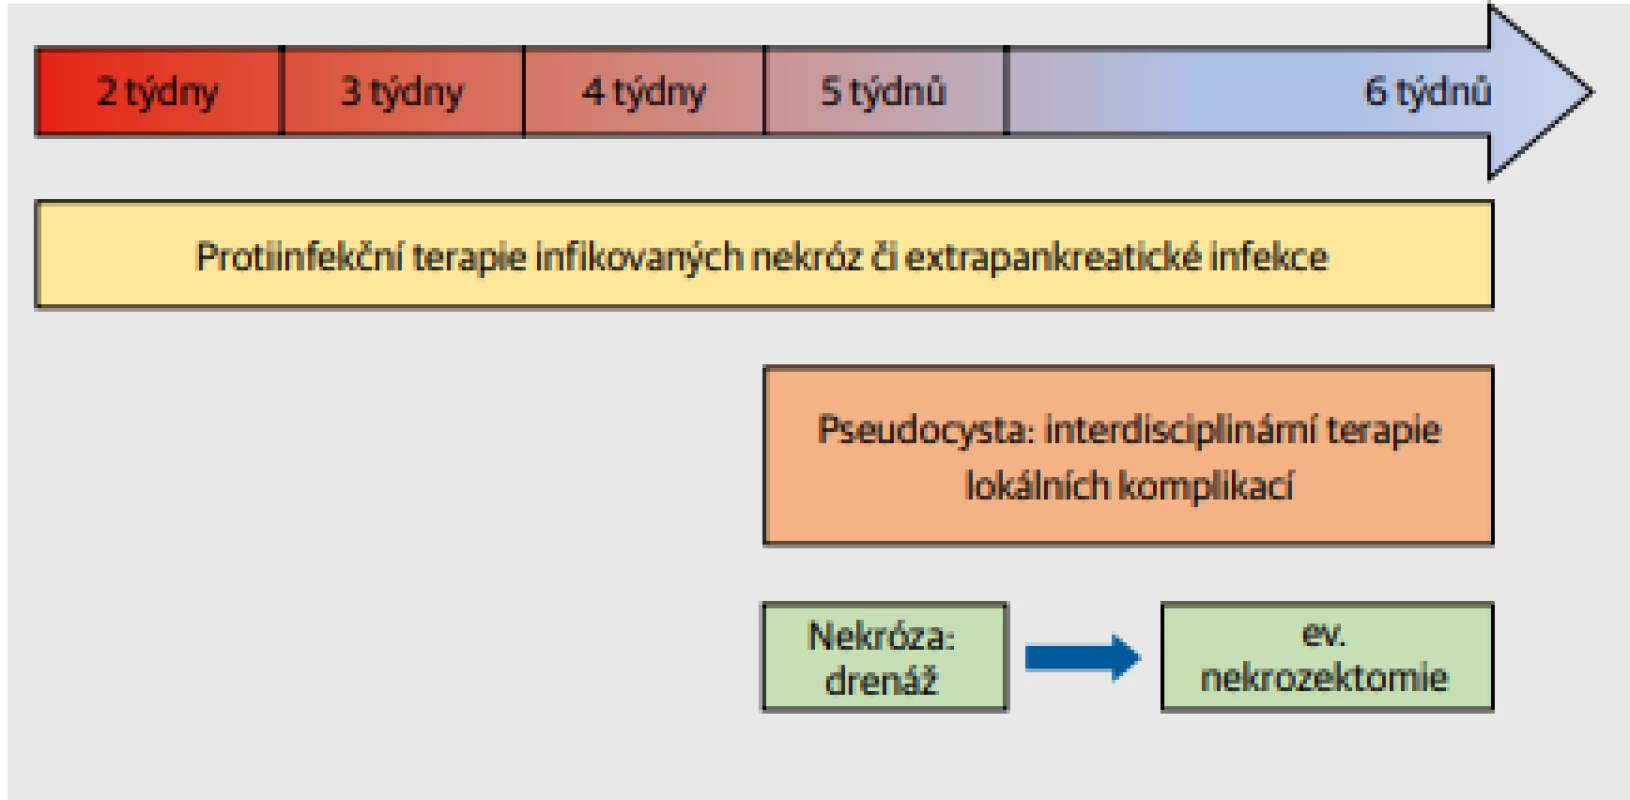  Léčebný postup pozdější fáze akutní pankreatitidy. Typickými terapeutickými opatřeními jsou antibiotická terapie infikovaných pankreatických nekróz a extrapankreatických komplikací, terapie lokálních
komplikací (drenáž pseudocyst) a po konsolidaci nekróz (WON – walled-off necrosis) definitivní
nekrozektomie.